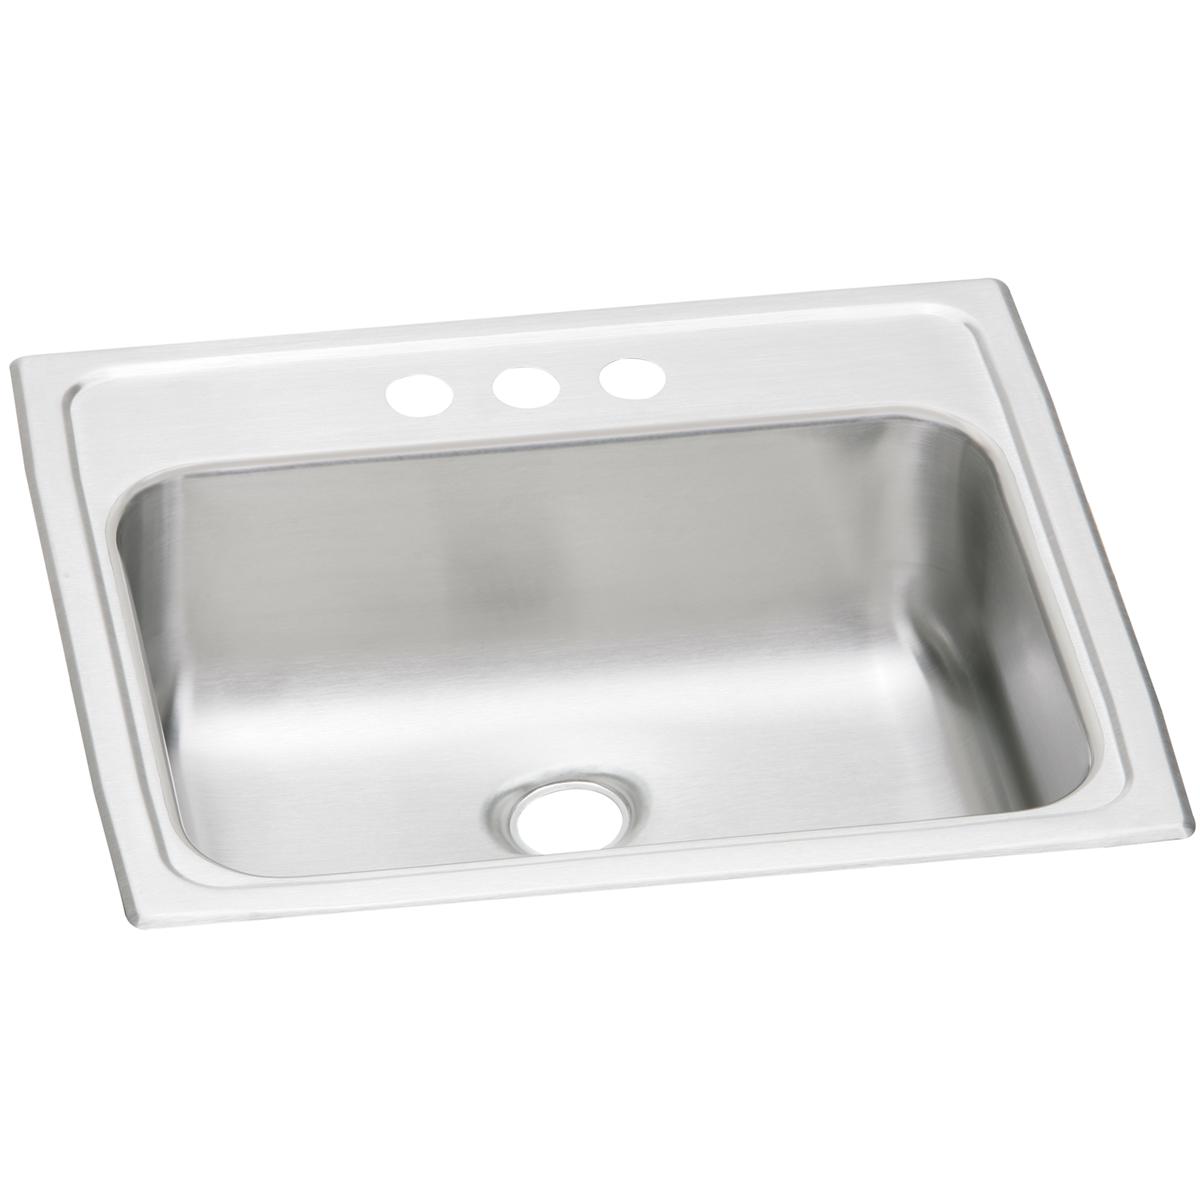 Elkay Celebrity Stainless Steel 19" x 17" x 6-1/8" Single Bowl Drop-in Bathroom Sink